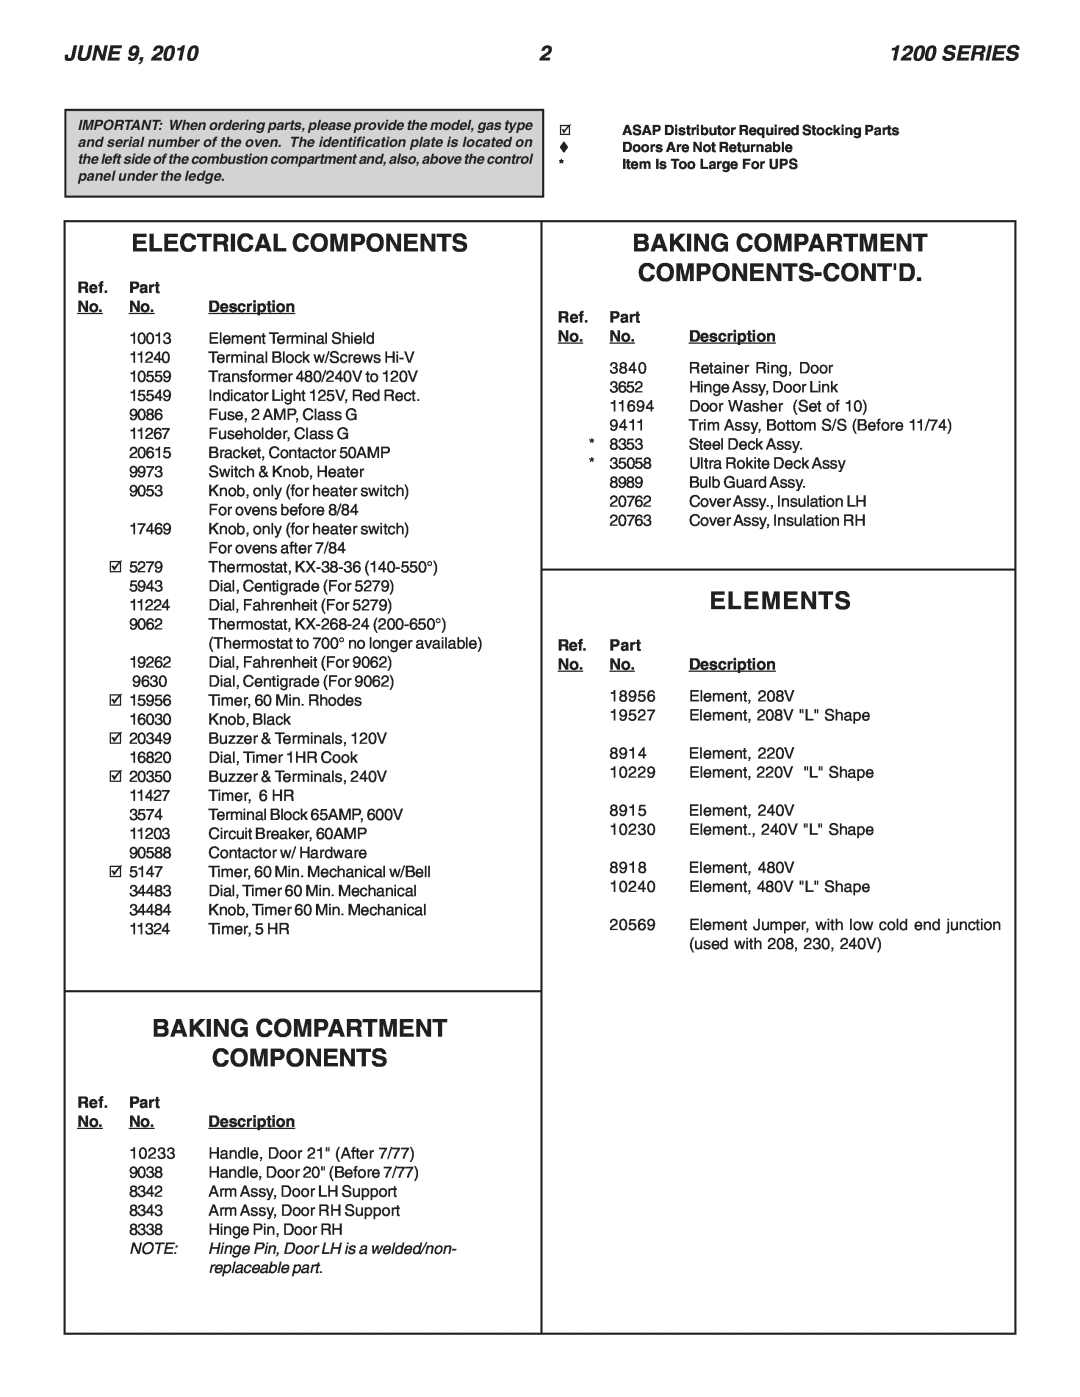 Blodgett 1200 Electrical Components, Baking Compartment Components-Contd, Elements, June, Series, Part, Description 